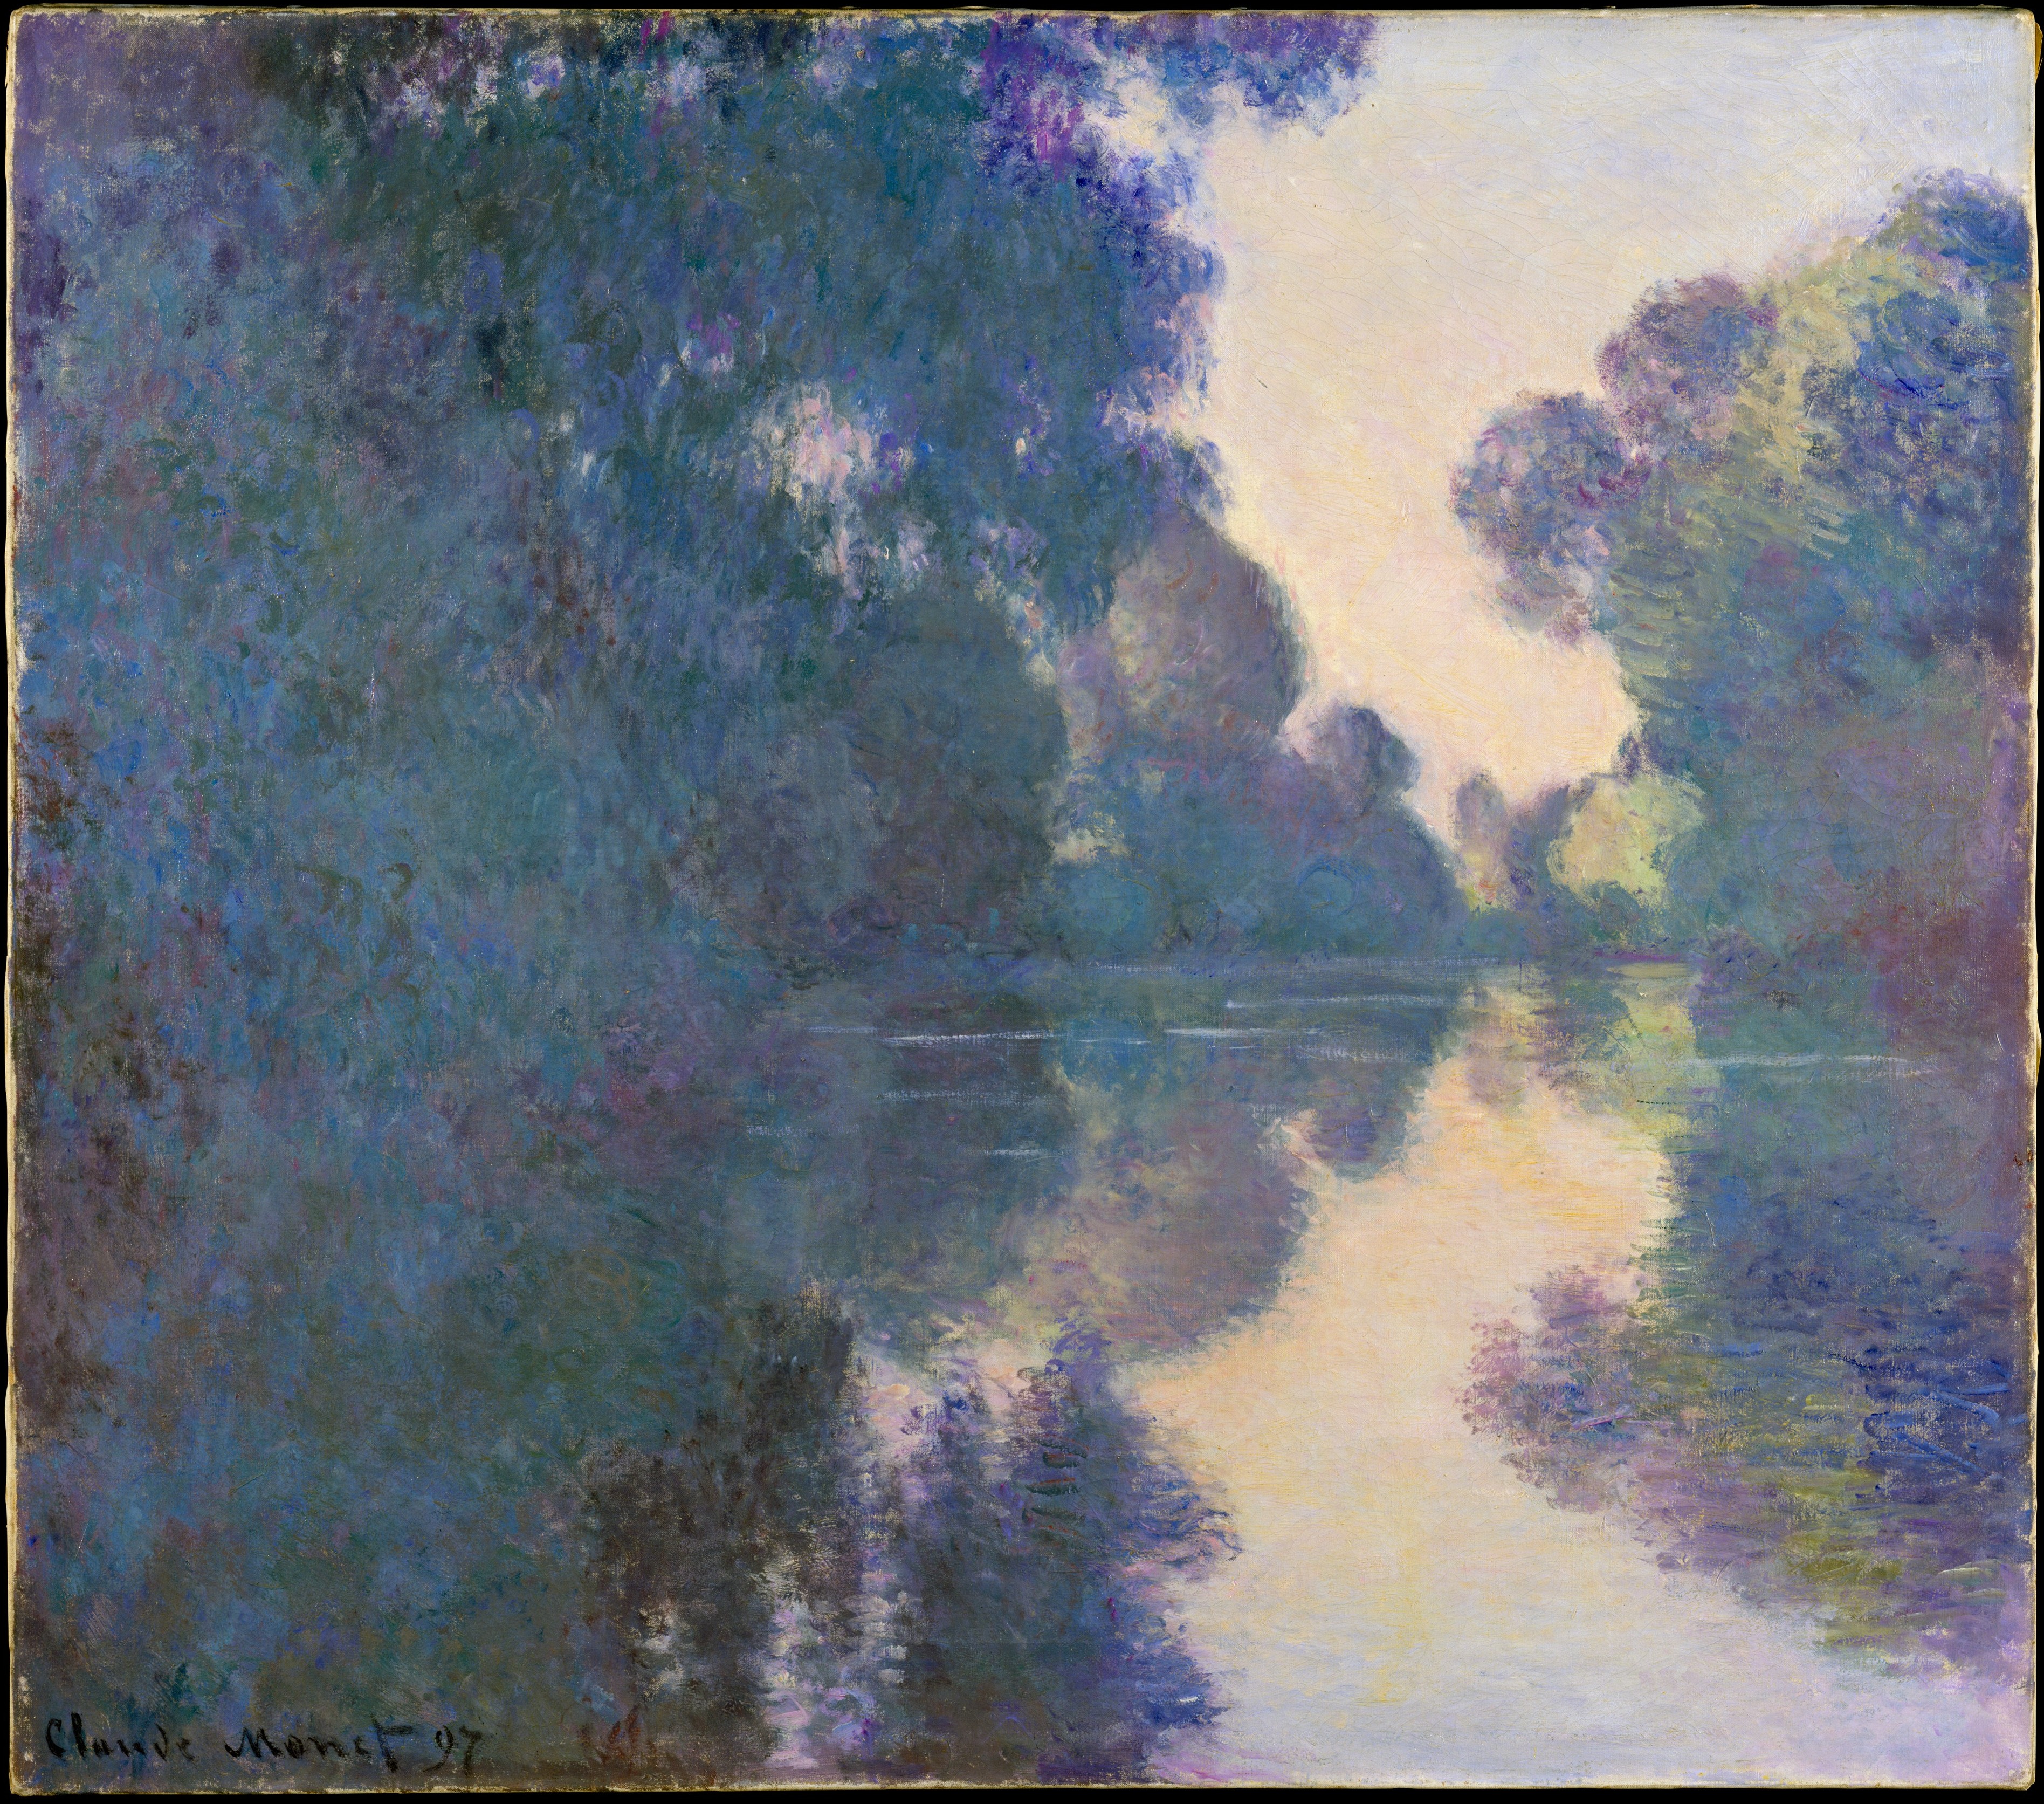 Figura 5. Claude Monet, Bras de Seine prés de Giverny